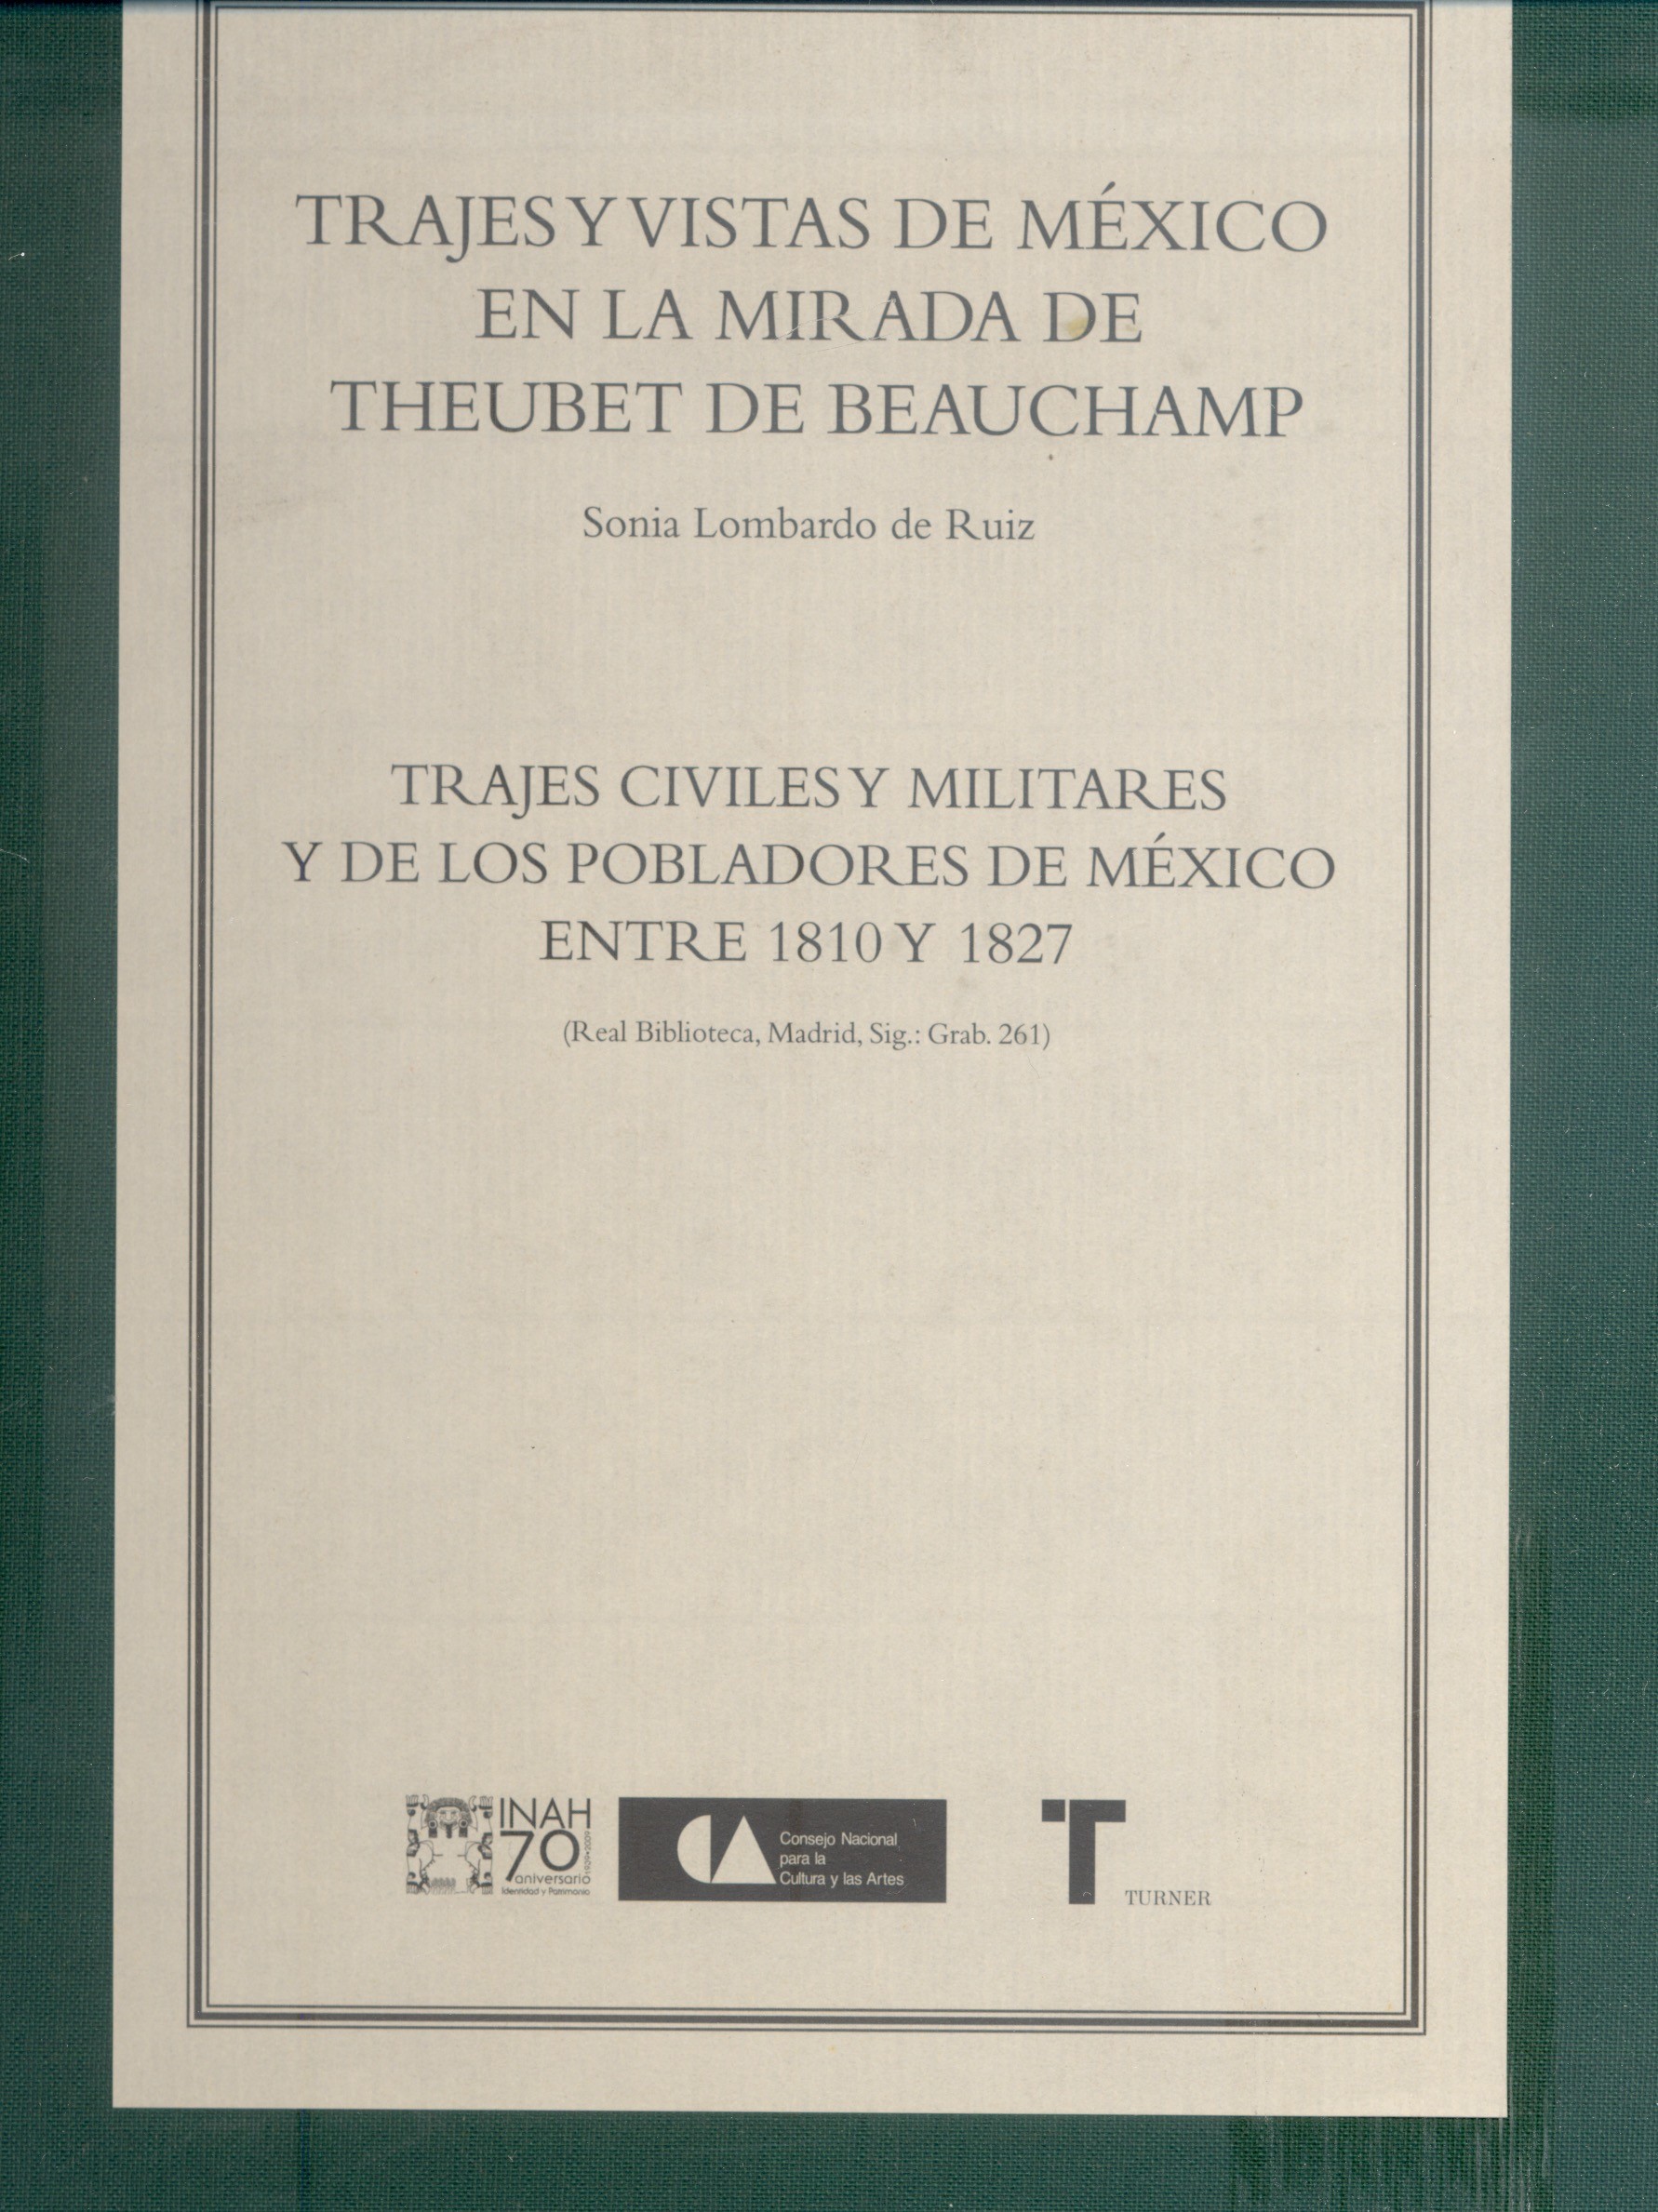 Sonia Lombardo de Ruiz. México, D.F.: Instituto Nacional de Antropología e Historia, 2009